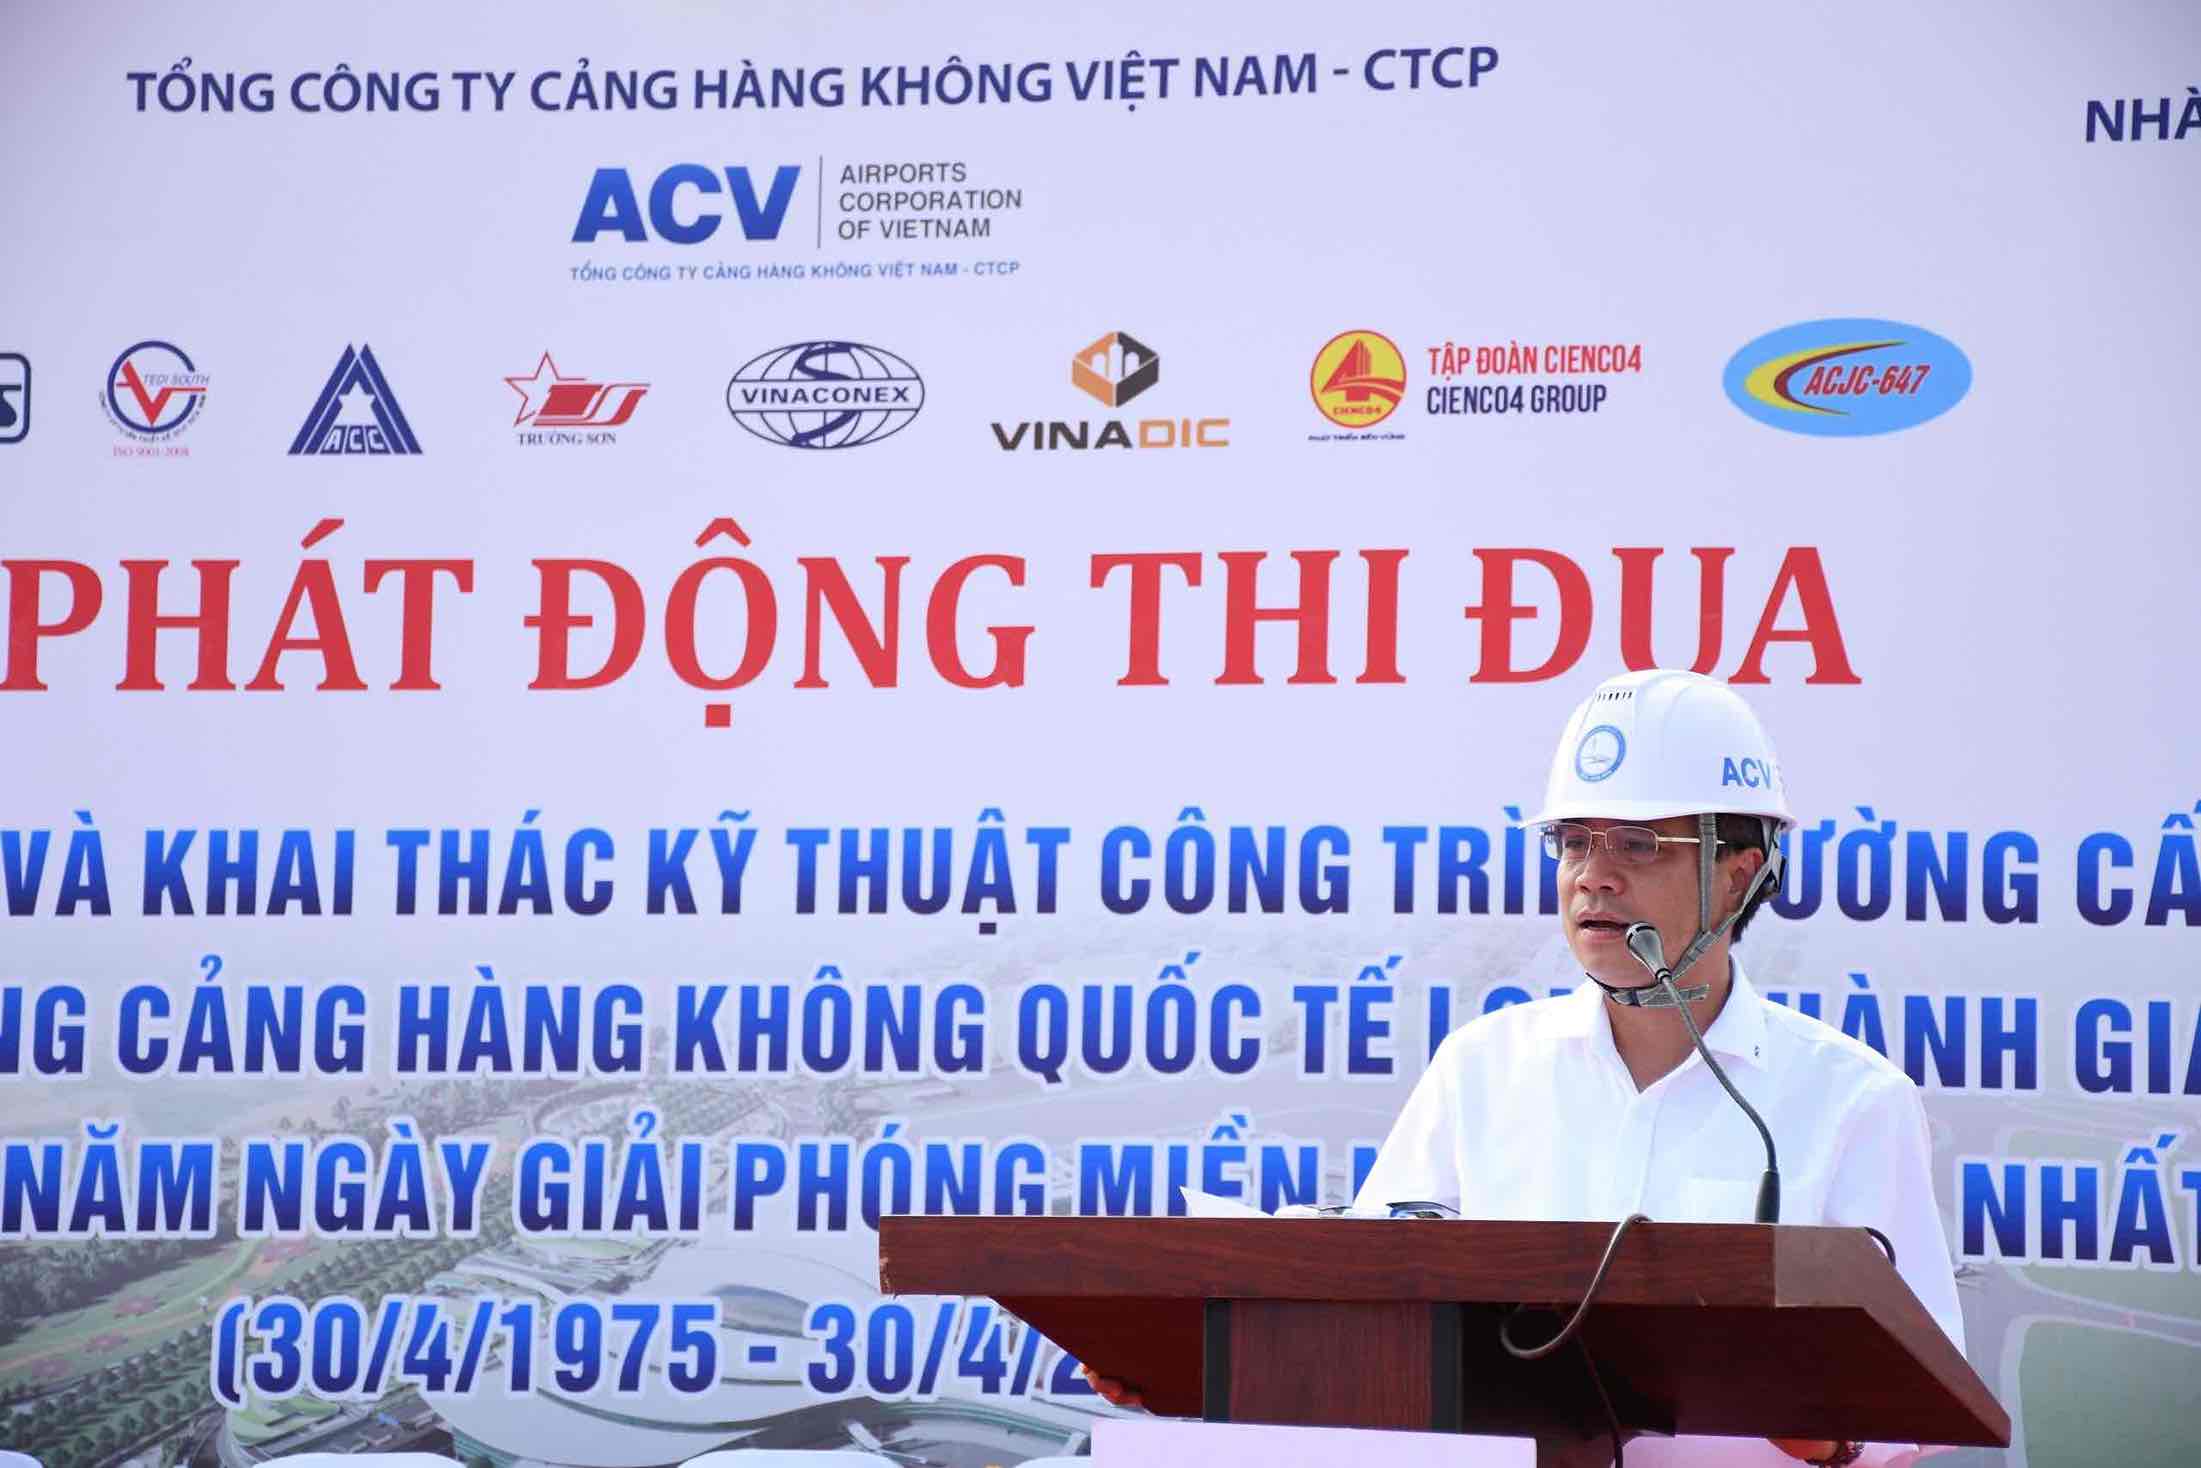 Ông Vũ Thế Phiệt – Tổng Giám đốc Tổng công ty Cảng hàng không Việt Nam ACV - phát biểu tại buổi lễ. Ảnh: Hà Anh Chiến